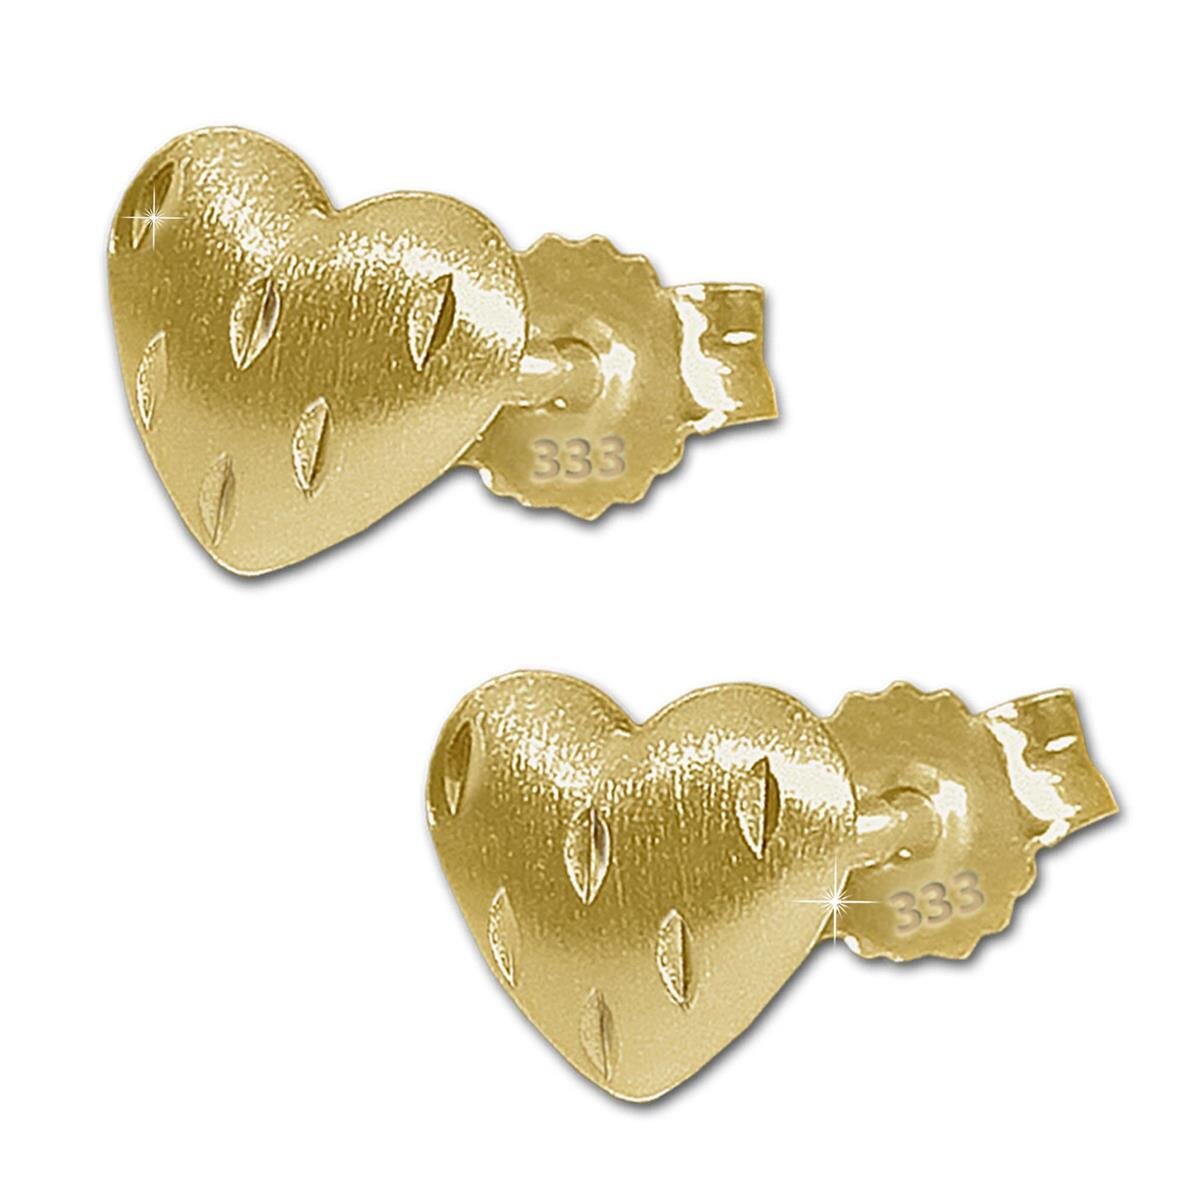 Goldene Ohrstecker Herz 5 mm gewölbt seidenmatt mit Linien diamantiert 333 Gold